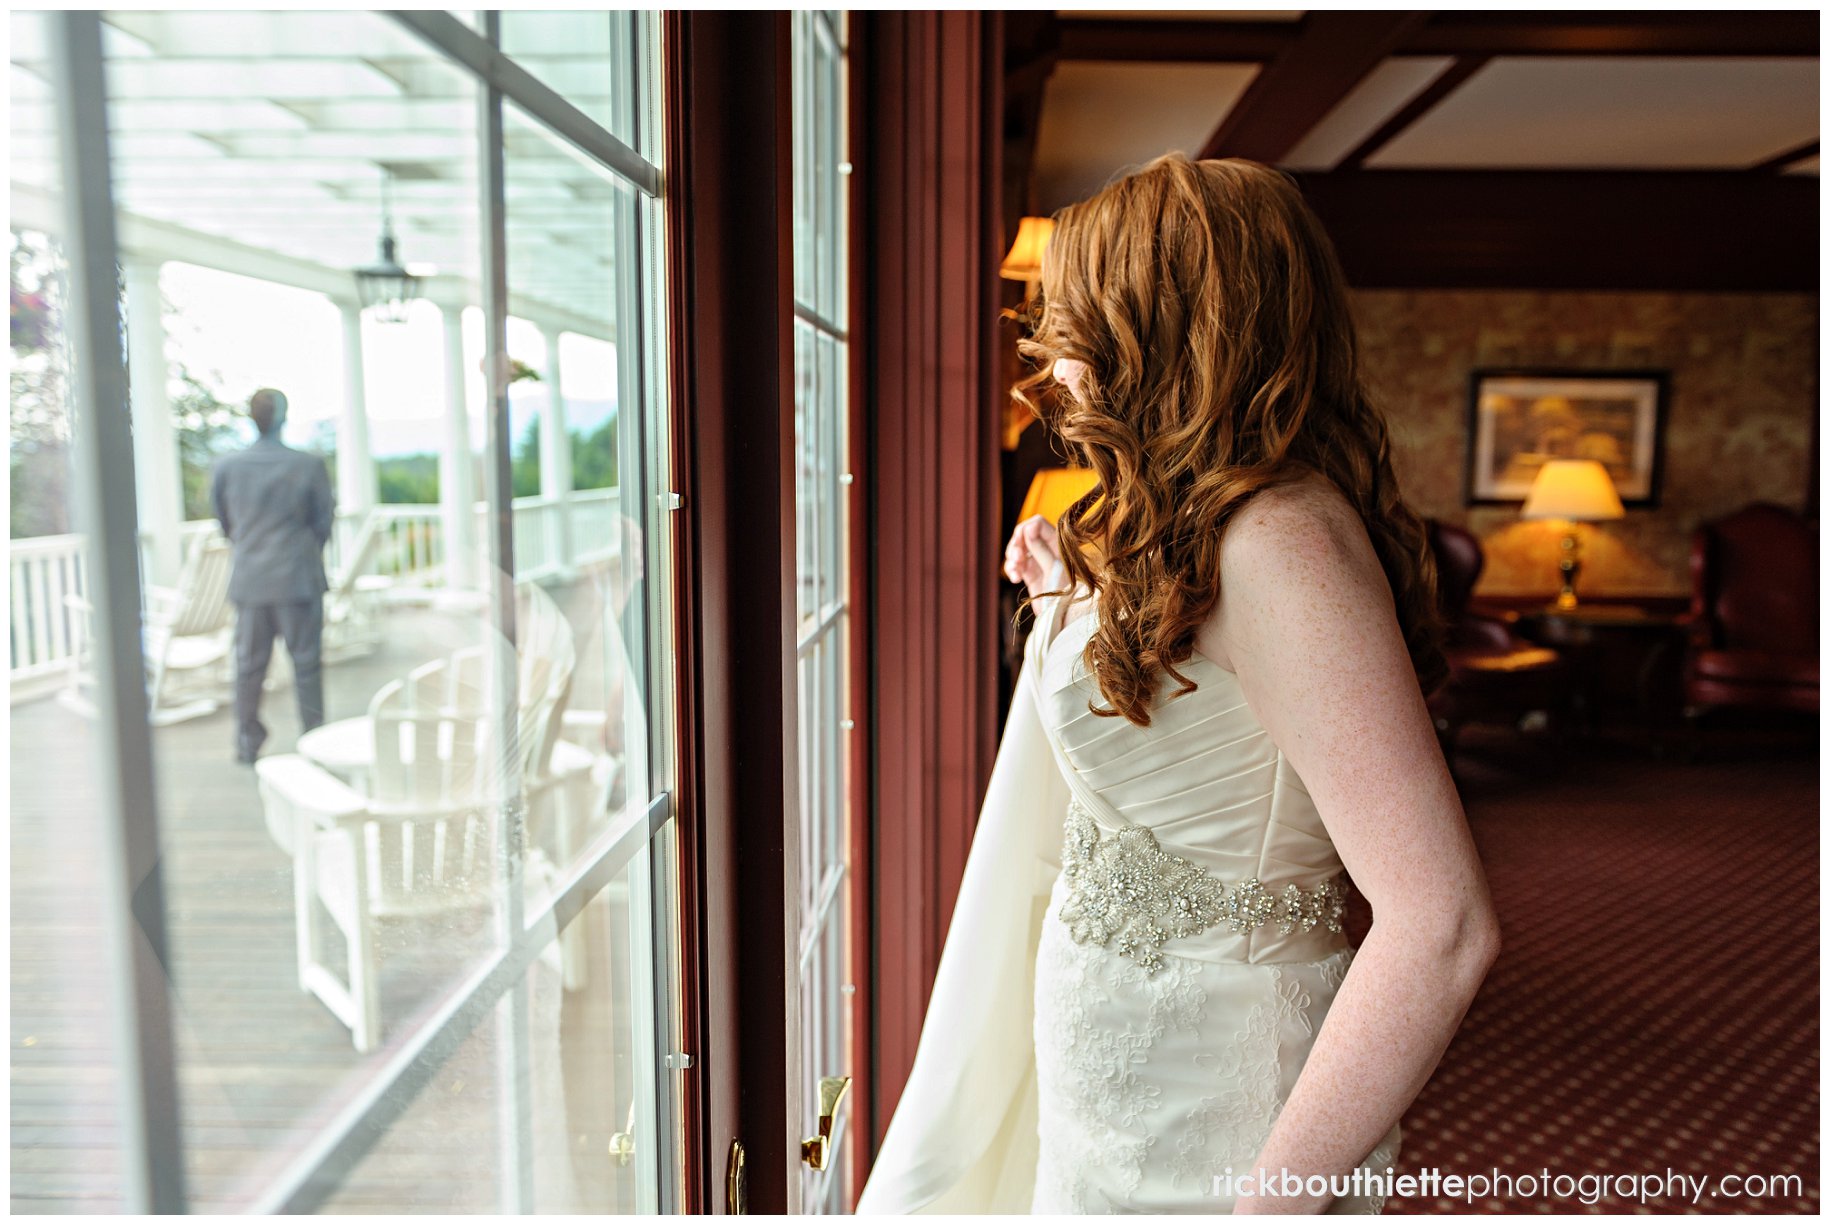 bride peeking out onto veranda where groom awaits her